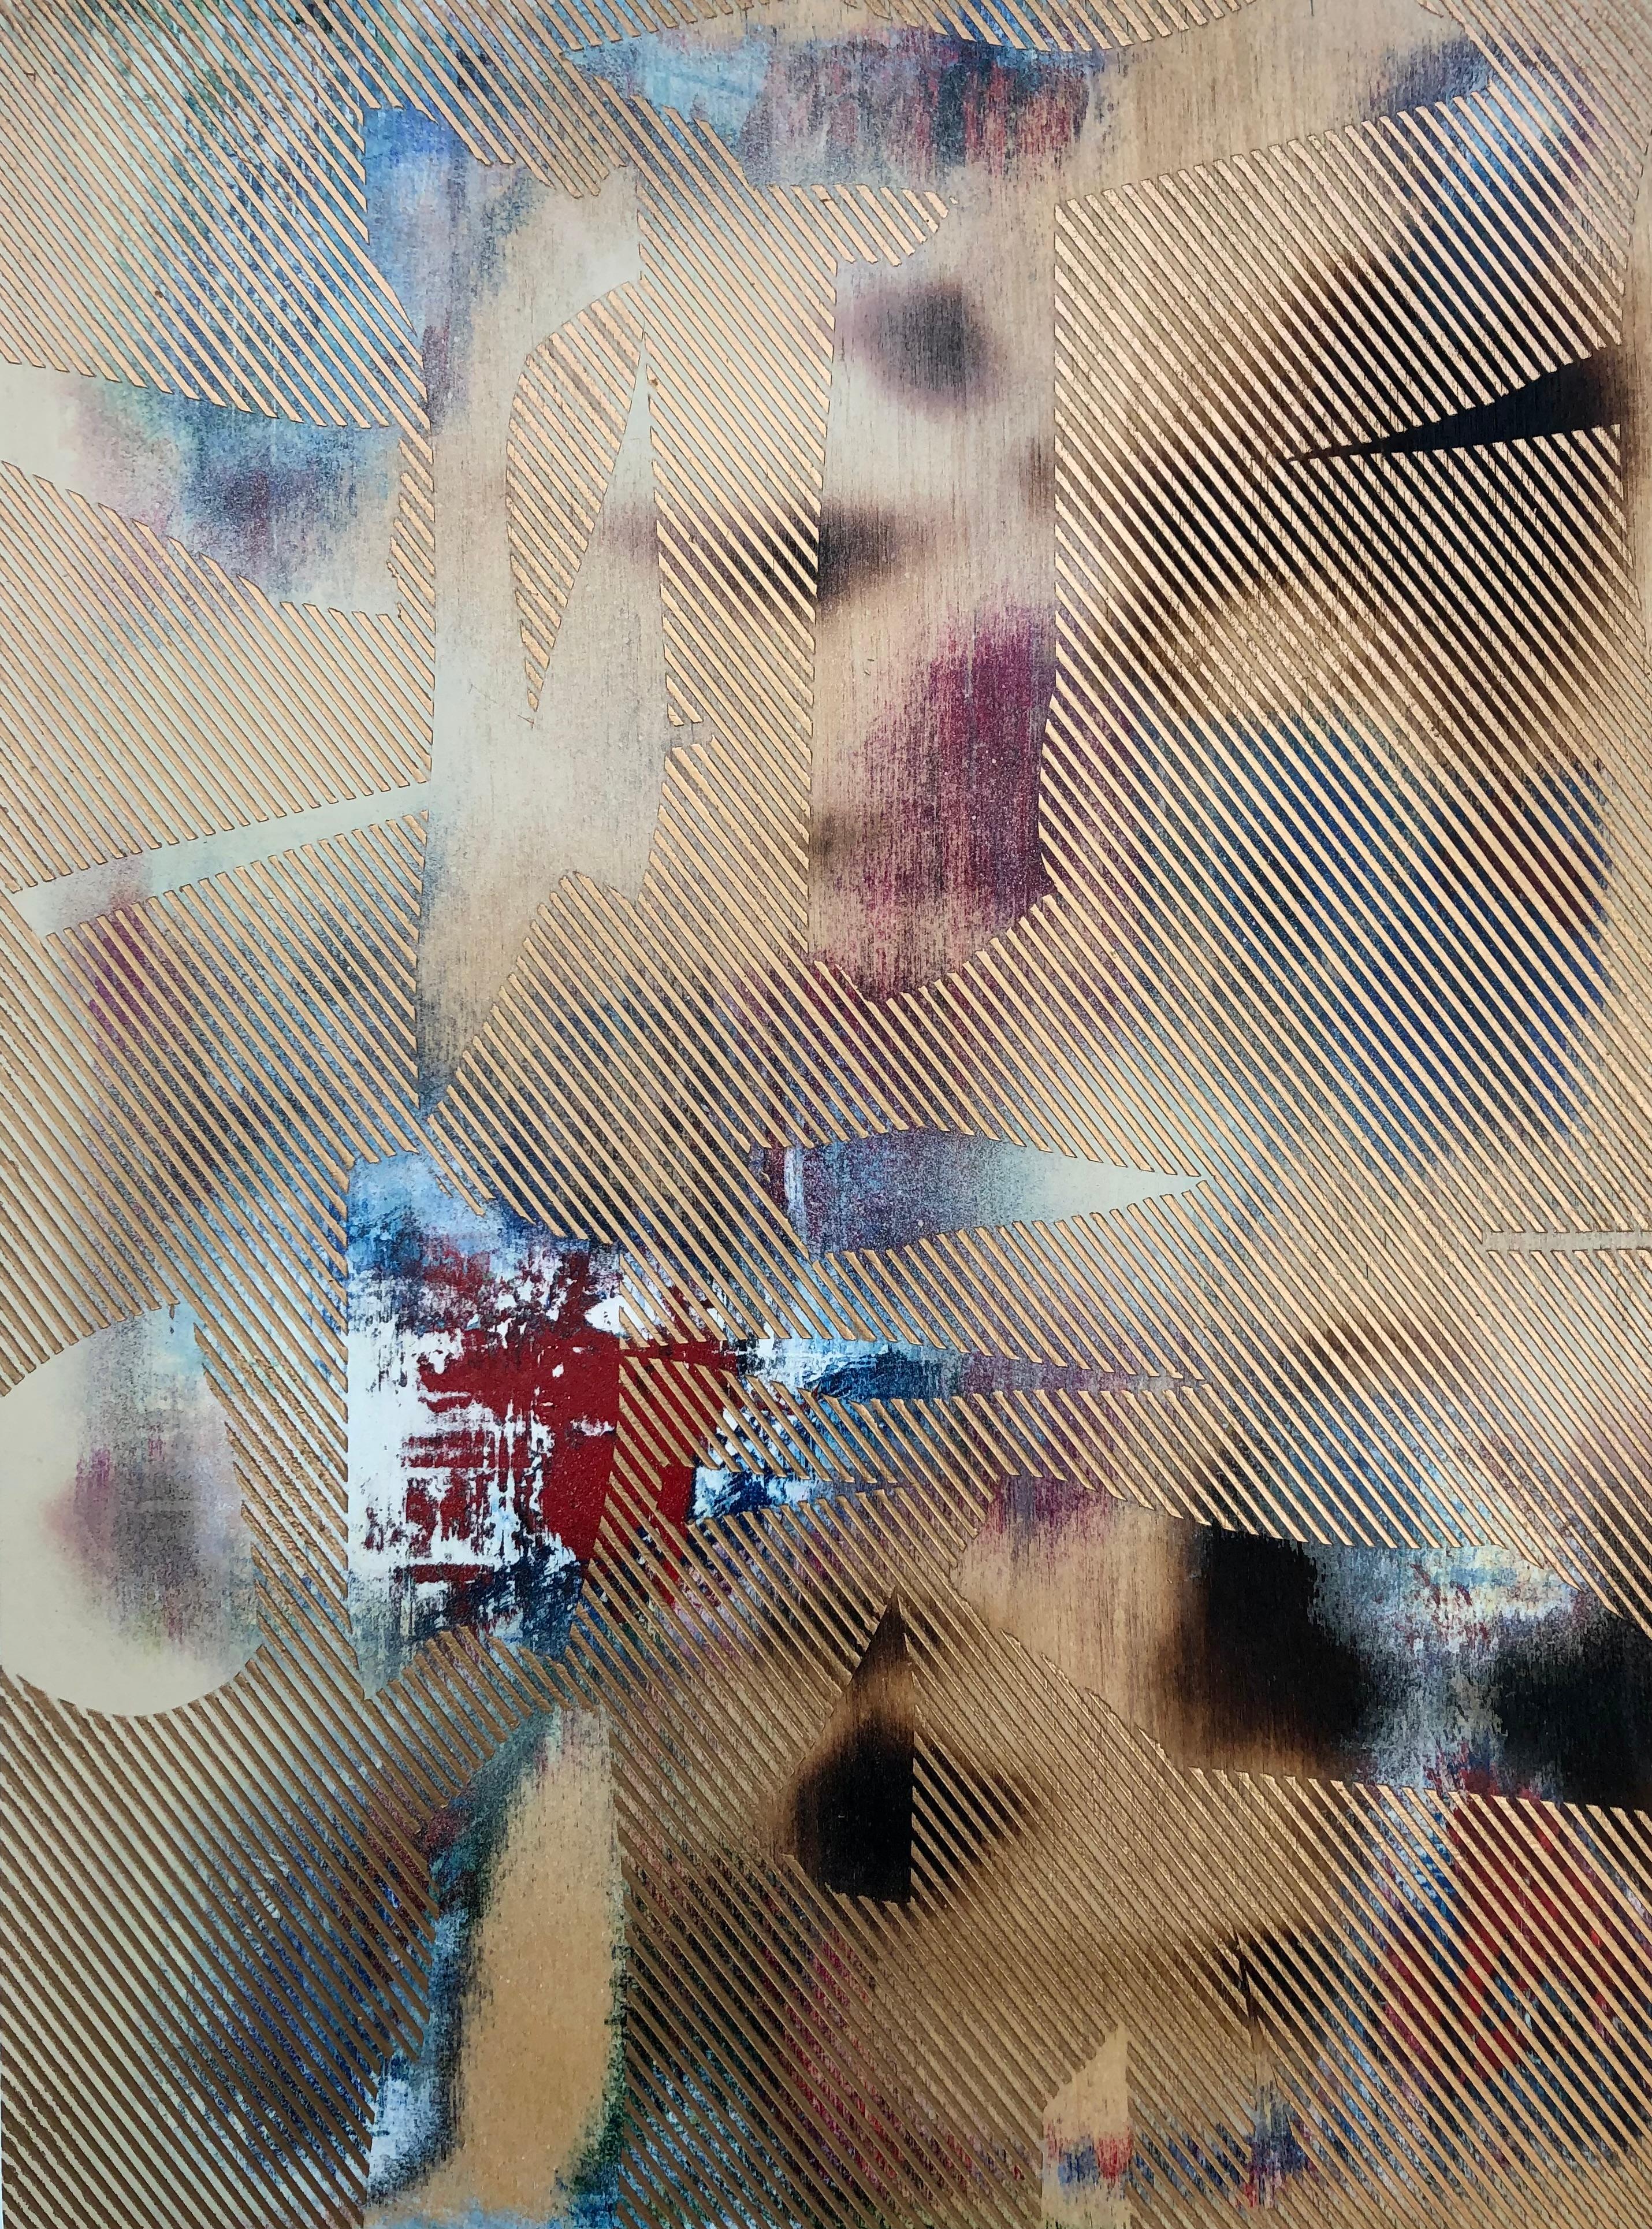 Mangata 3 (peinture à petite échelle à grille dorée en bois abstrait op art contemporain)